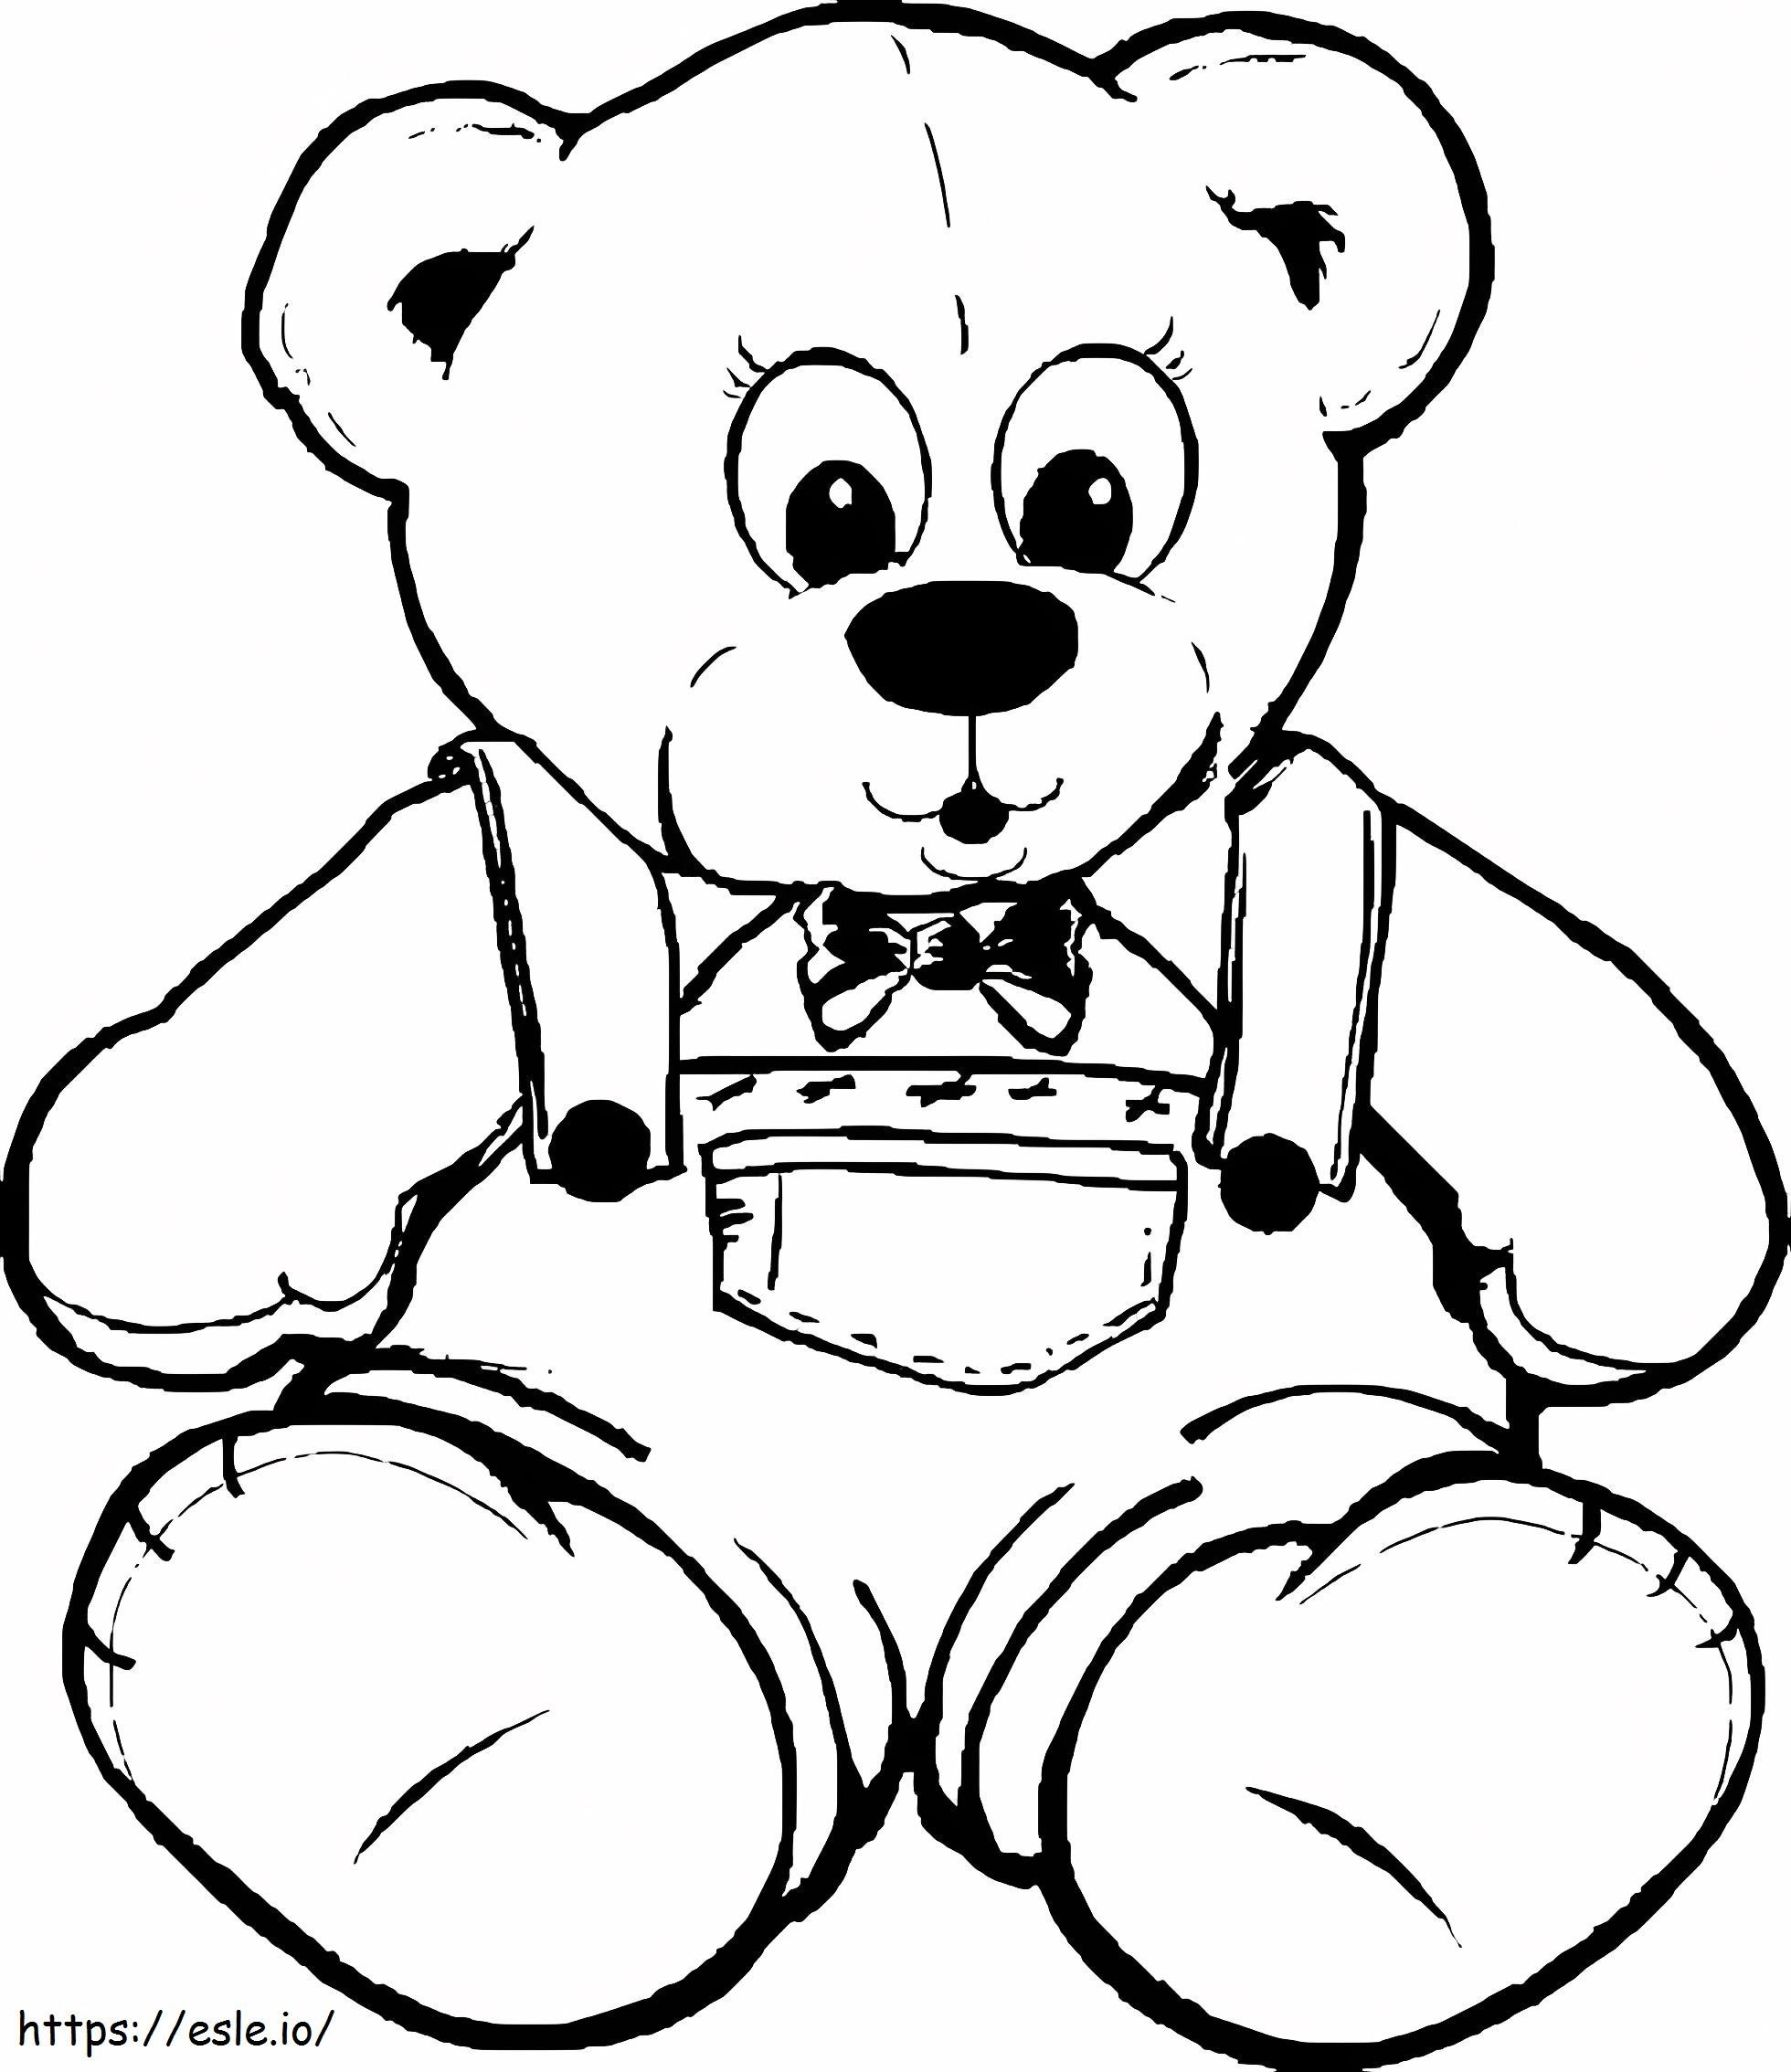 Disegno dell'orsacchiotto da colorare